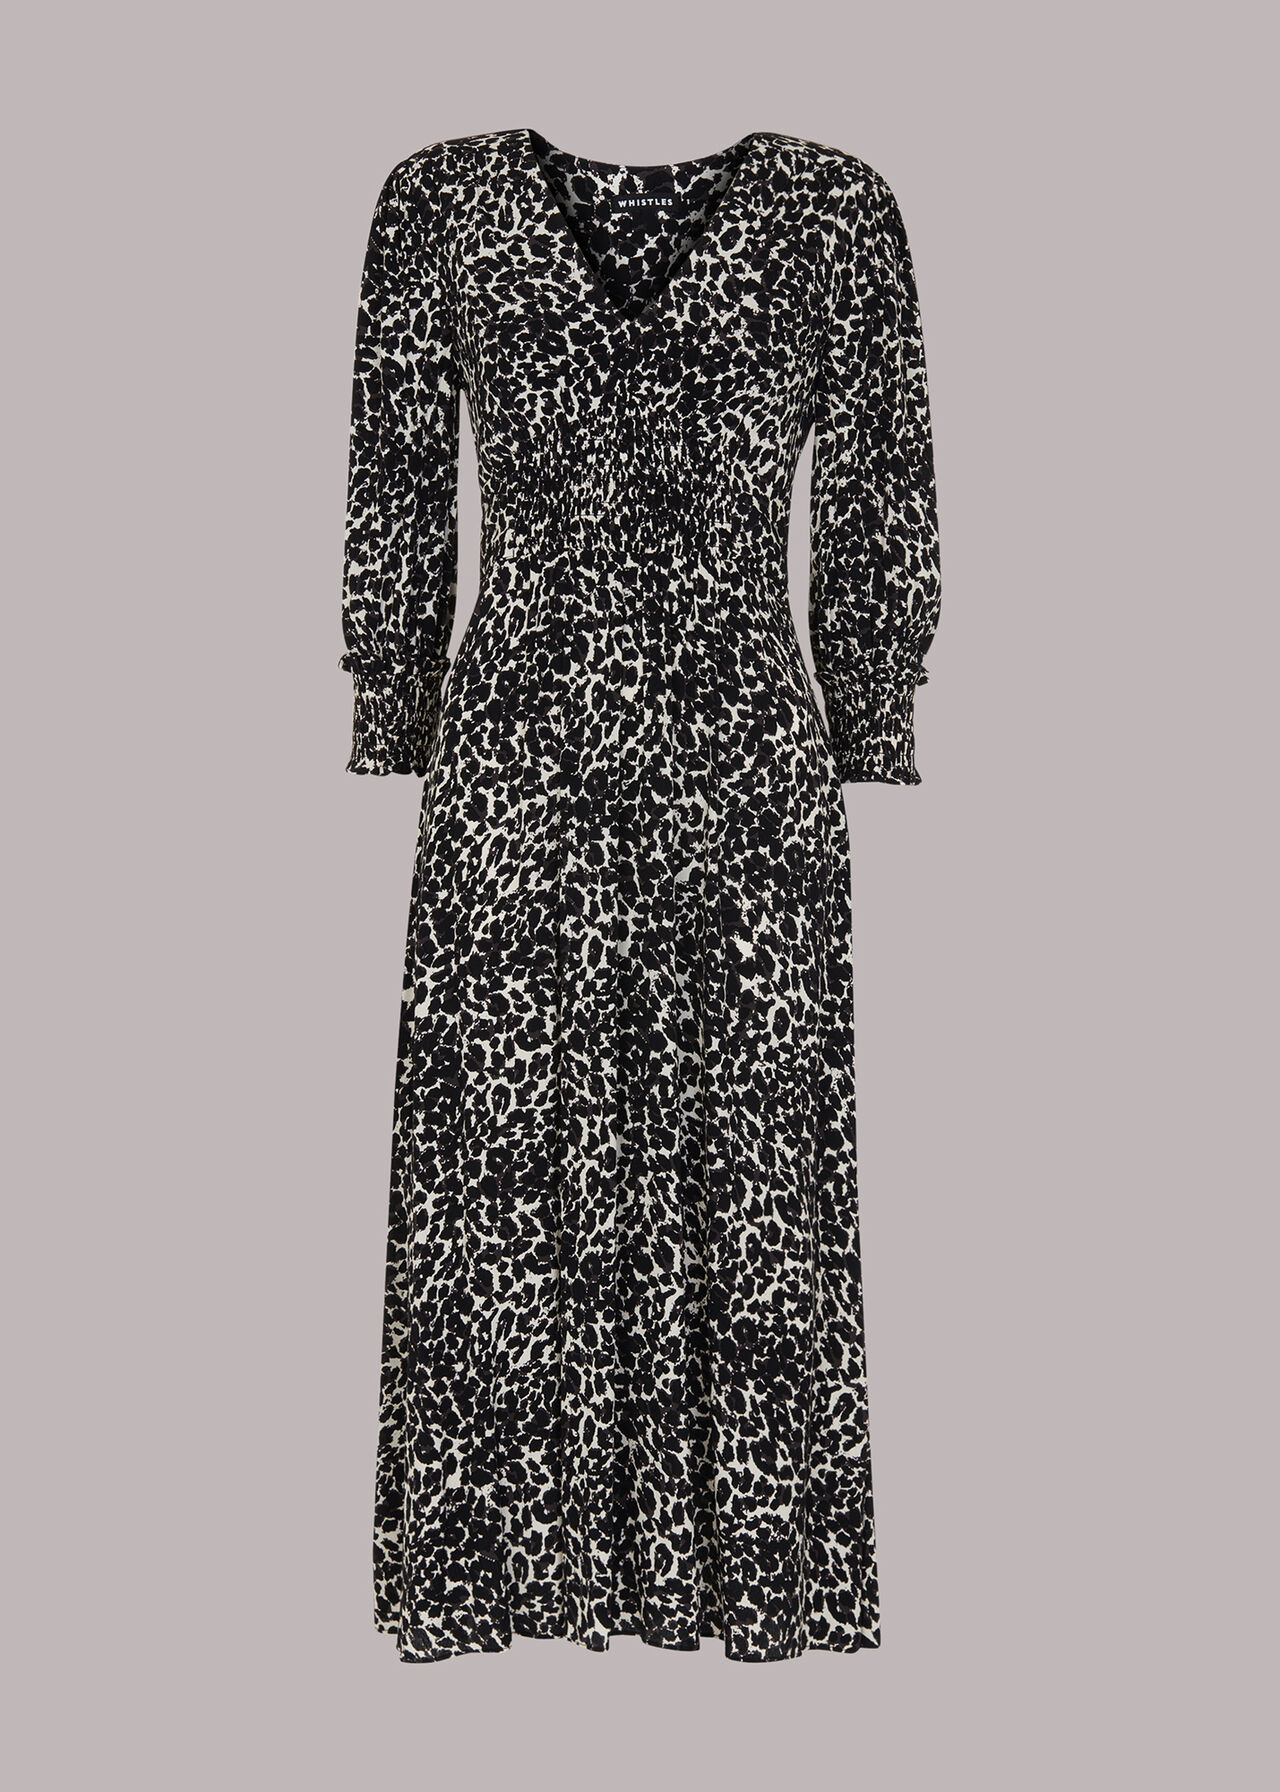 Shadow Leopard Shirred Dress